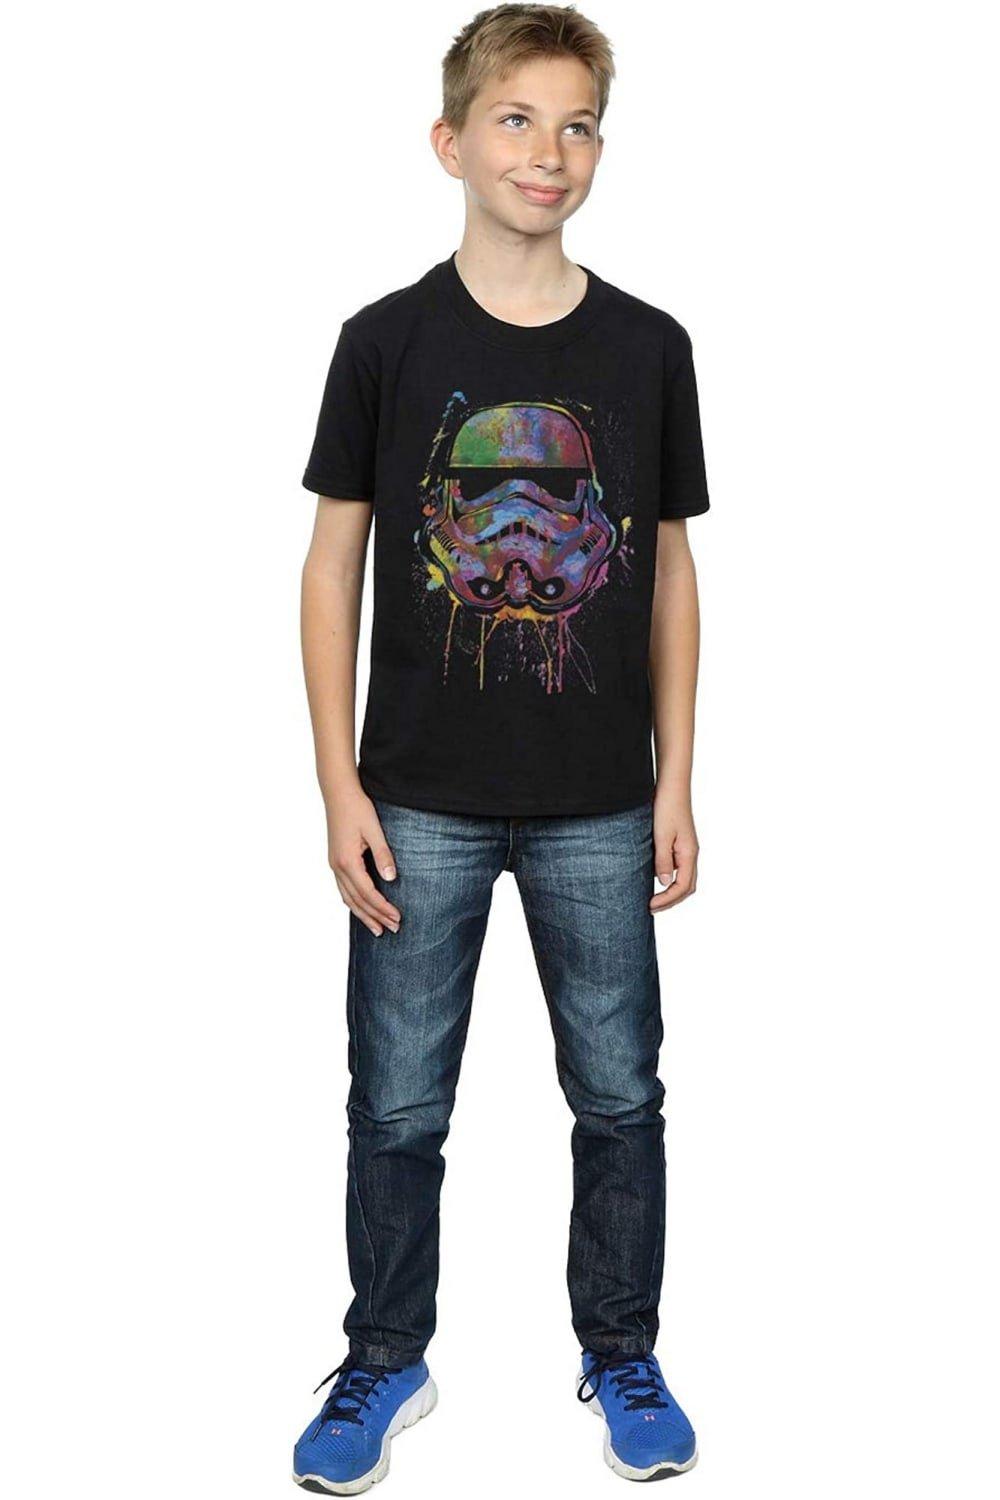 Stormtrooper Paint Splatter Cotton T-Shirt